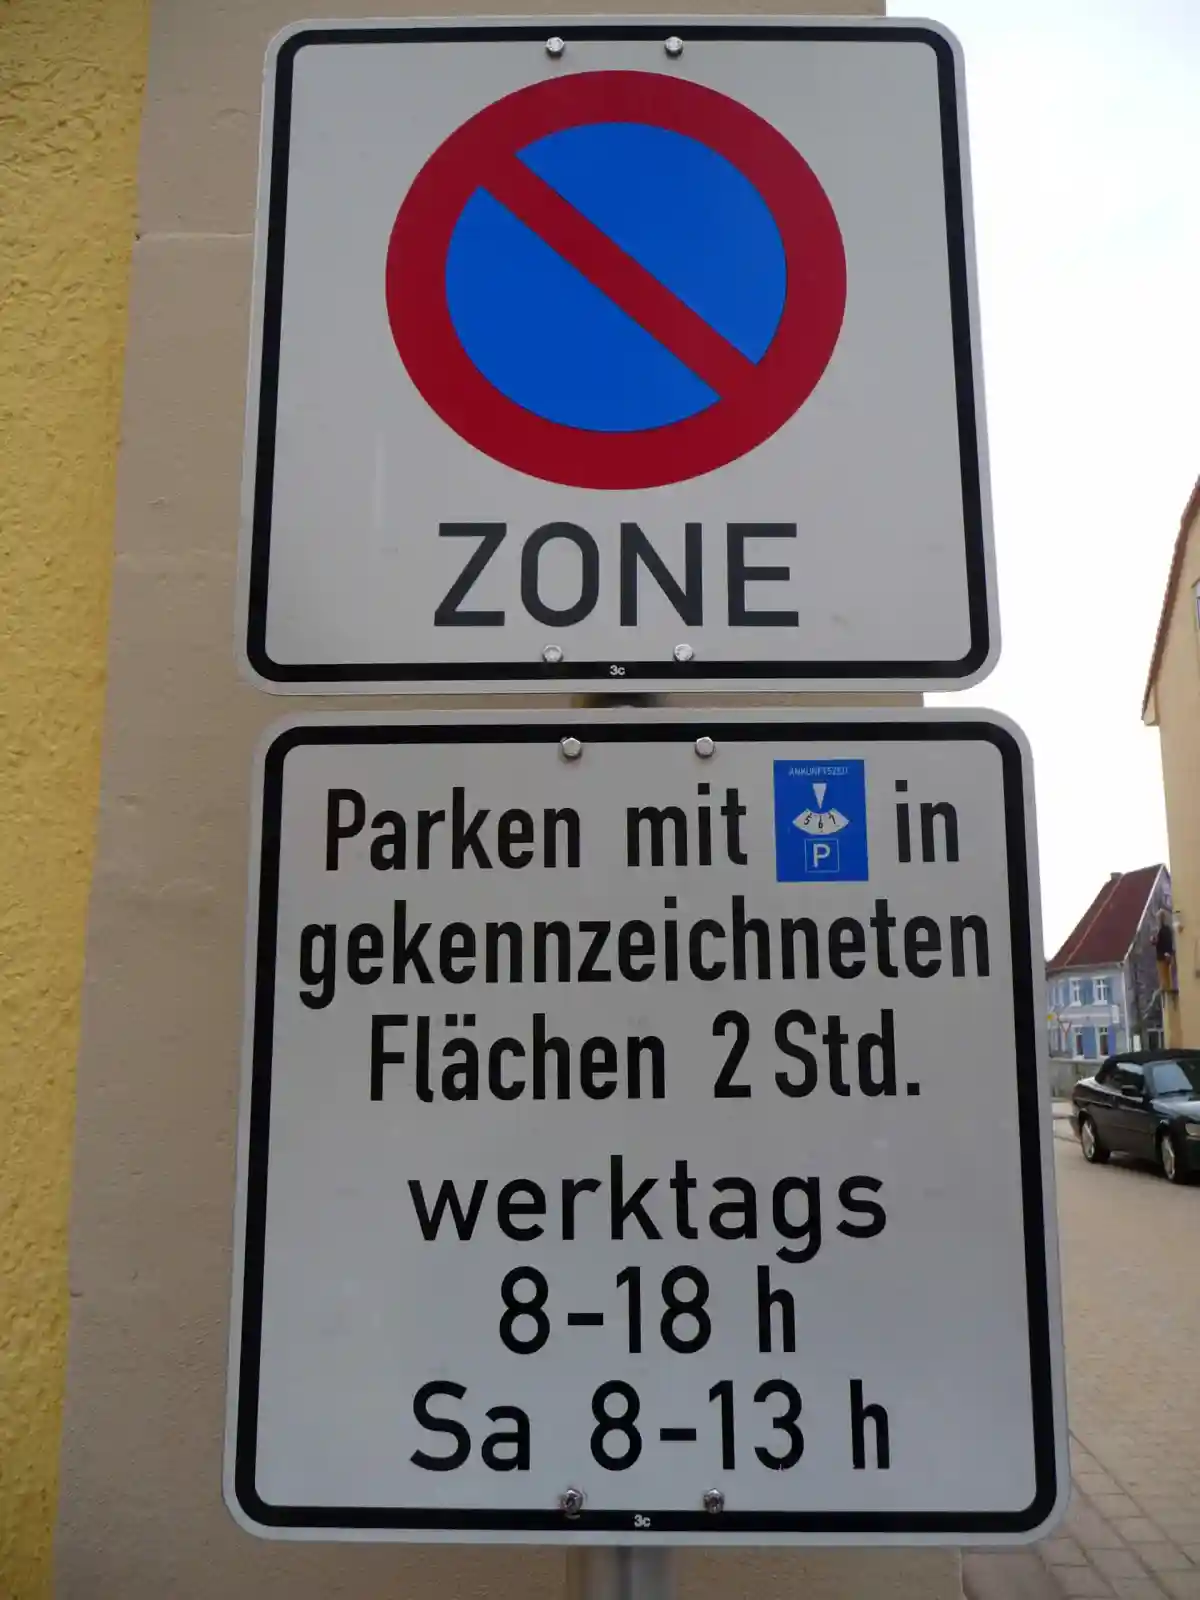 Дорожный знак на парковке в Германии. Фото: 4028mdk09 / wikipedia.org